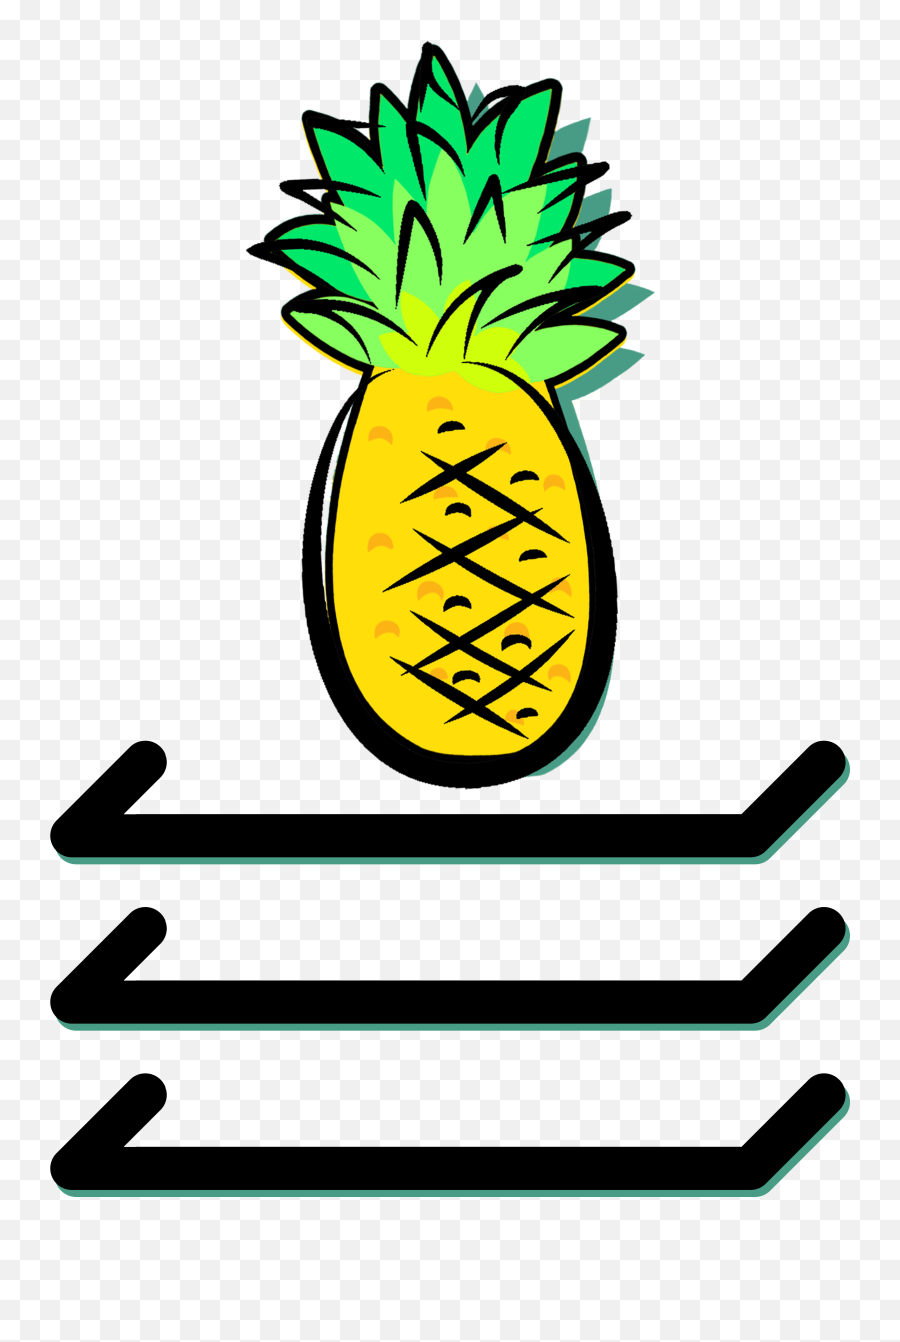 Top Shelf Pineapple - Pineapple Clipart Full Size Clipart Clip Art Png,Pineapple Clipart Png